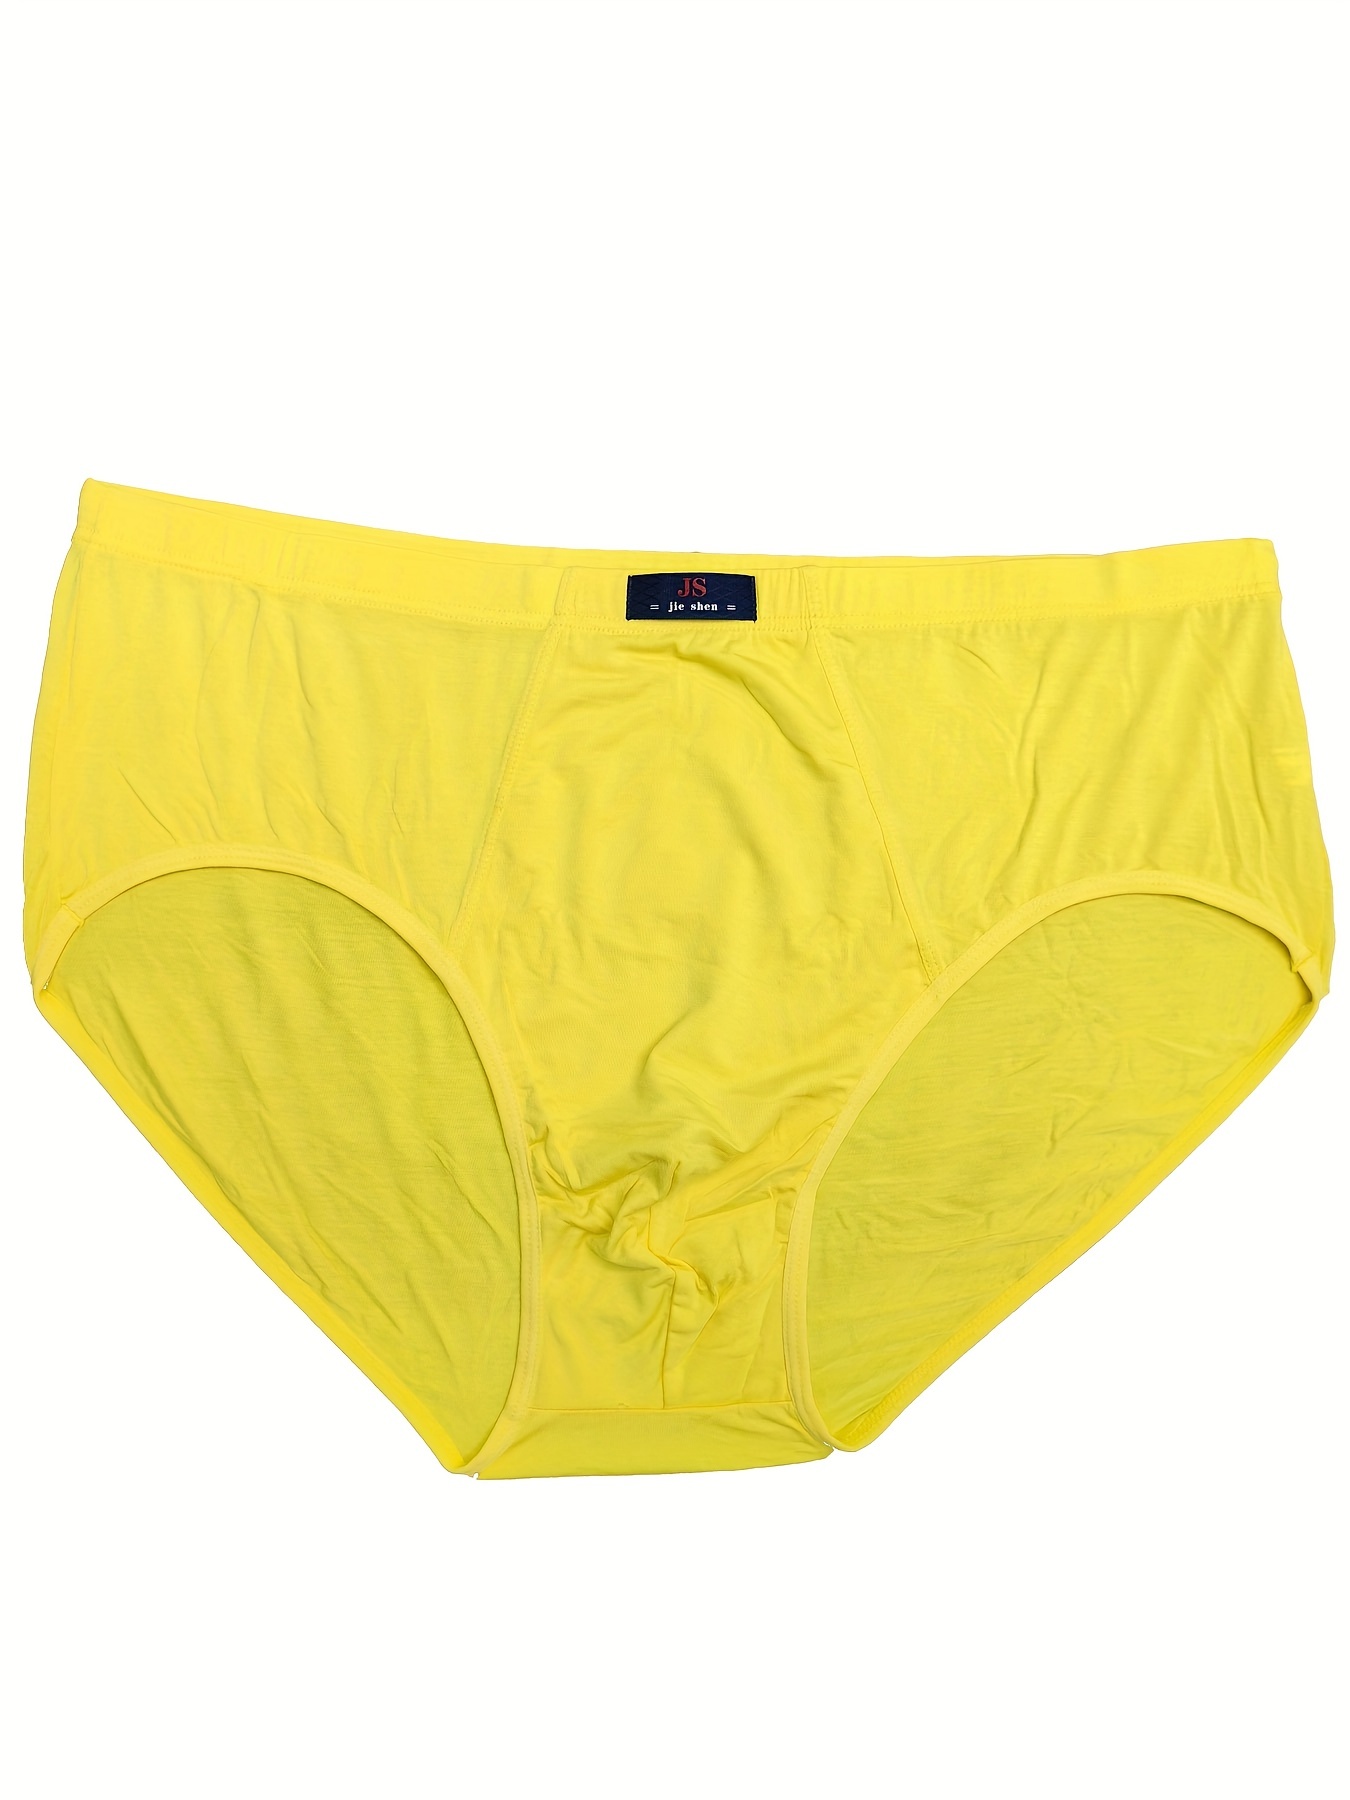 Cheap Men's Underwear Triangle Cotton Mid-waist Loose Pants Plus Size  Bottom Pants